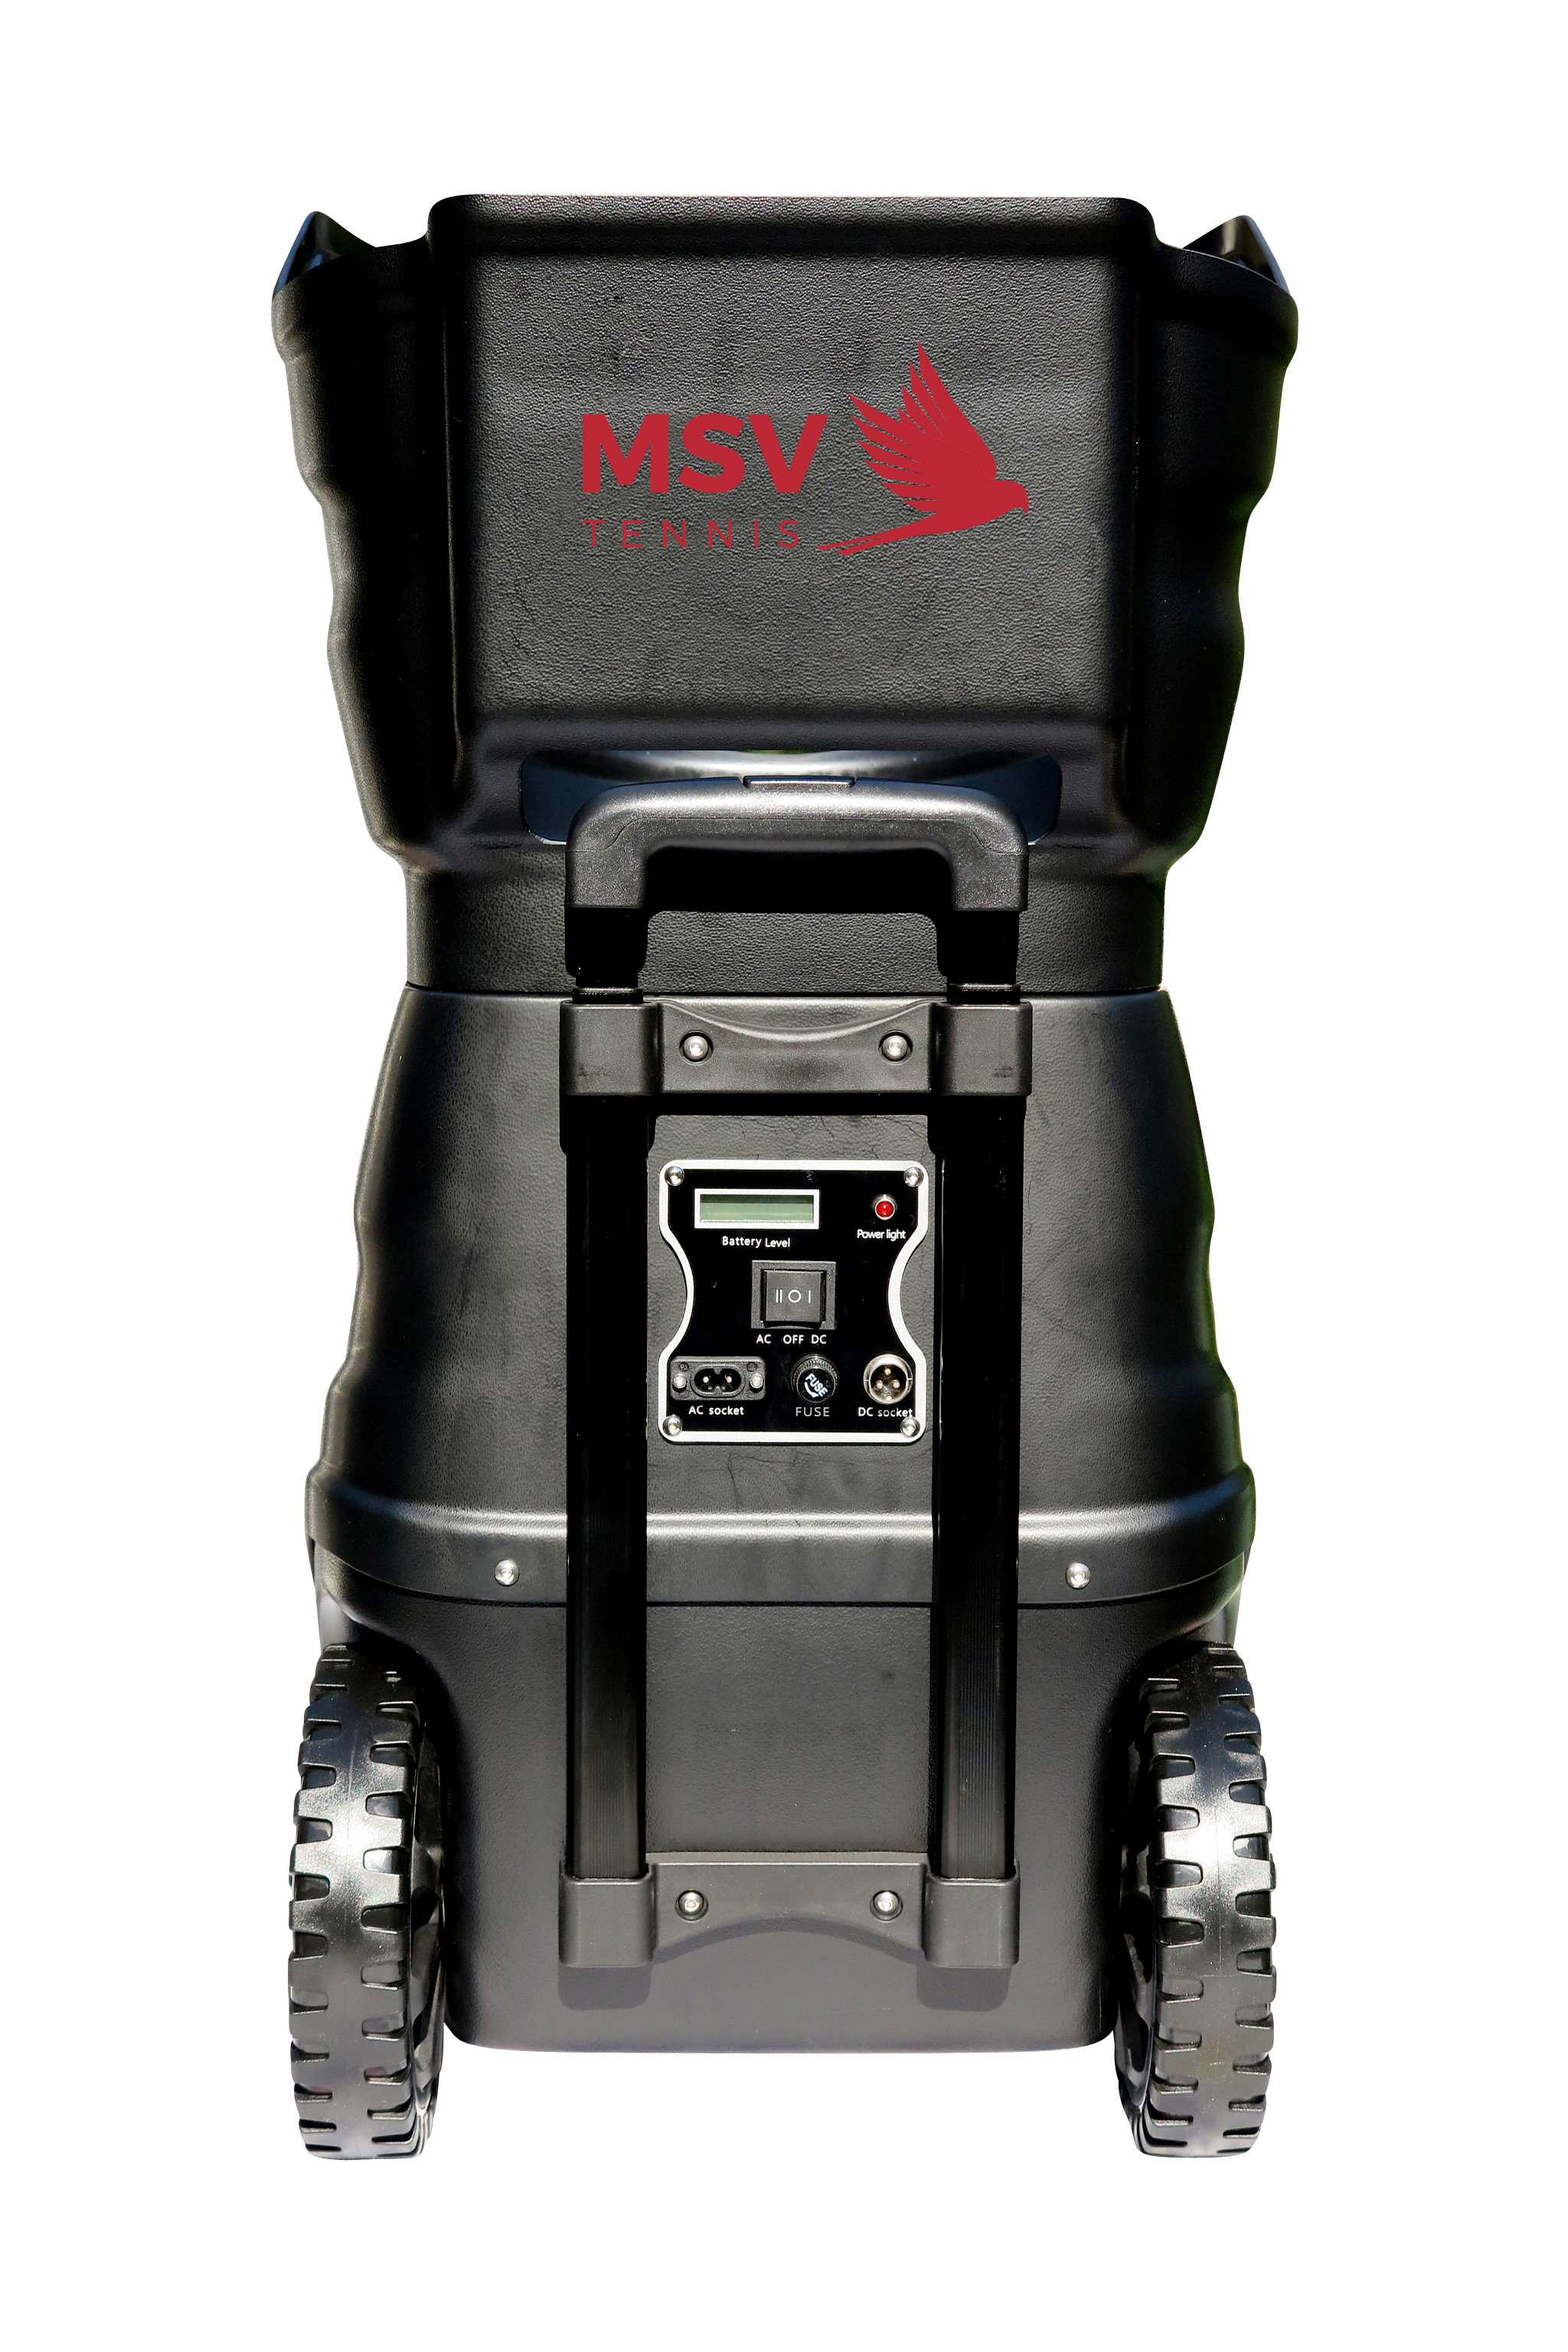 Teleskopgriff Typ 1 für MSV PlayTec